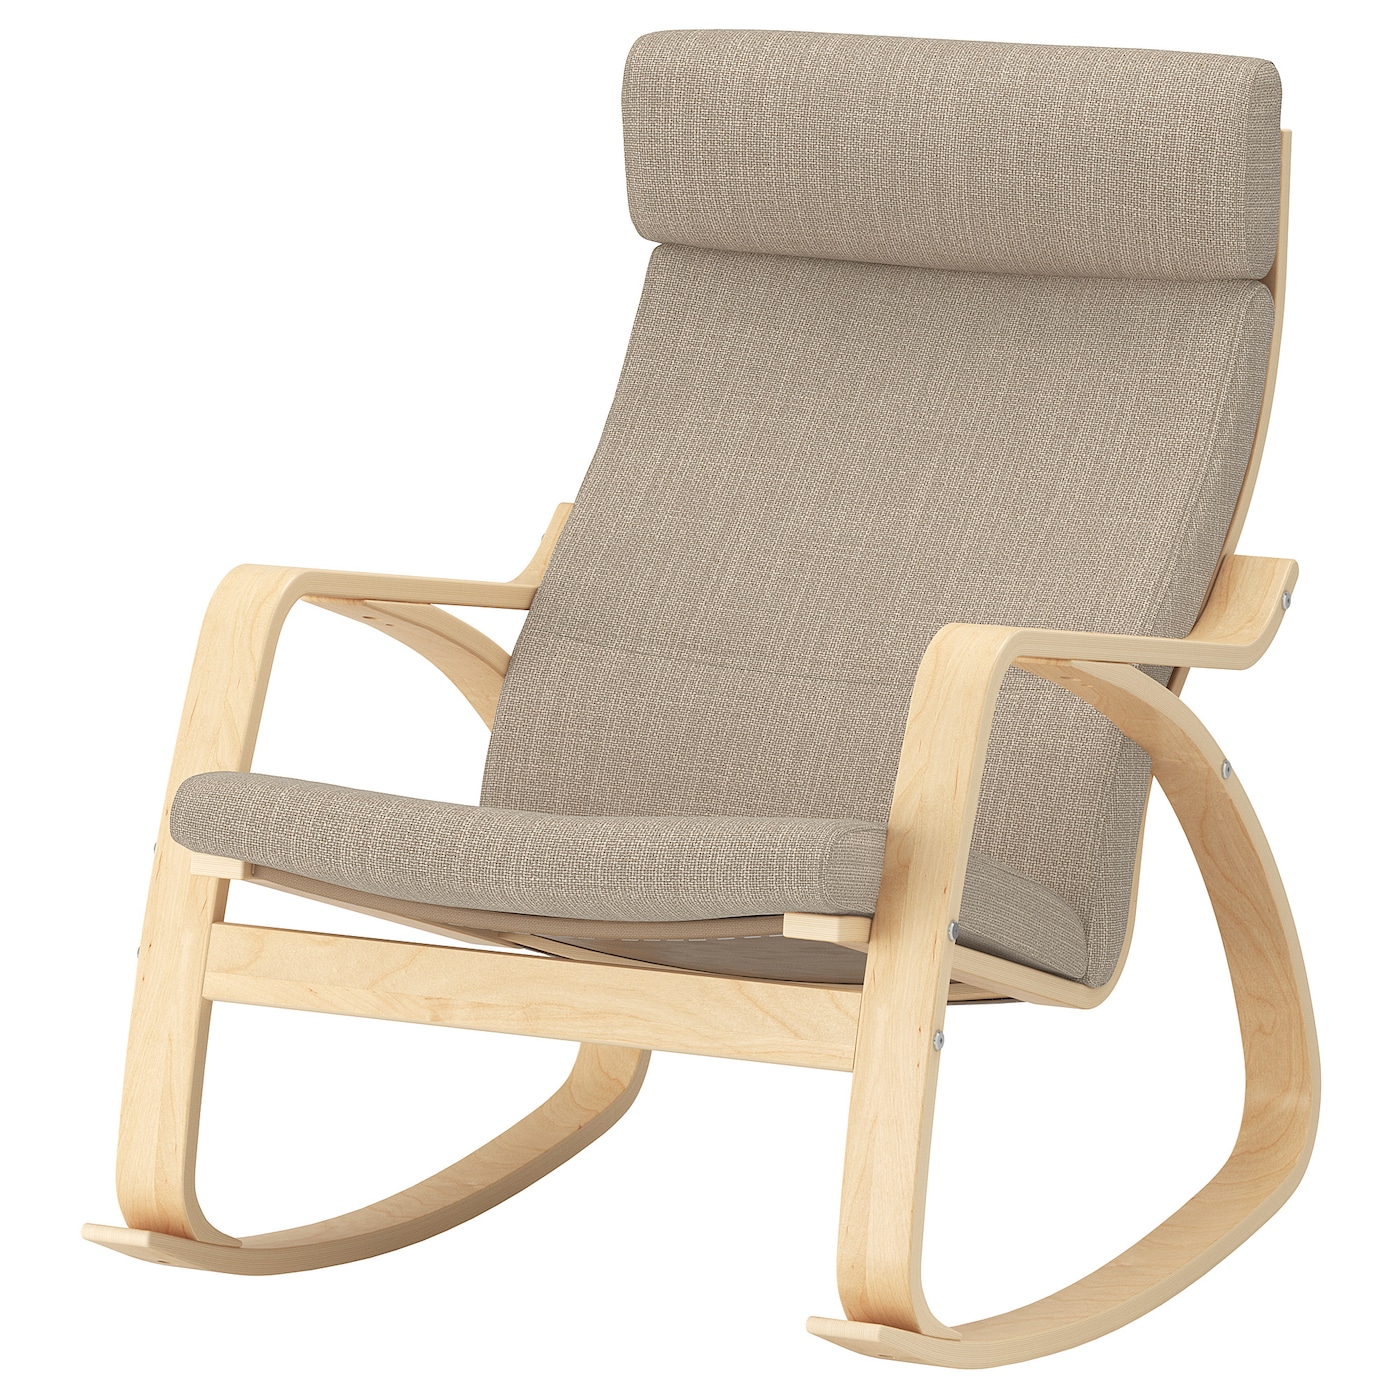 современное простое складное кресло качалка для всей семьи балкона спальни кресло с луной диван для отдыха кресло качалка мебель для го ПОЭНГ Кресло-качалка, березовый шпон/Хилларед бежевый POÄNG IKEA